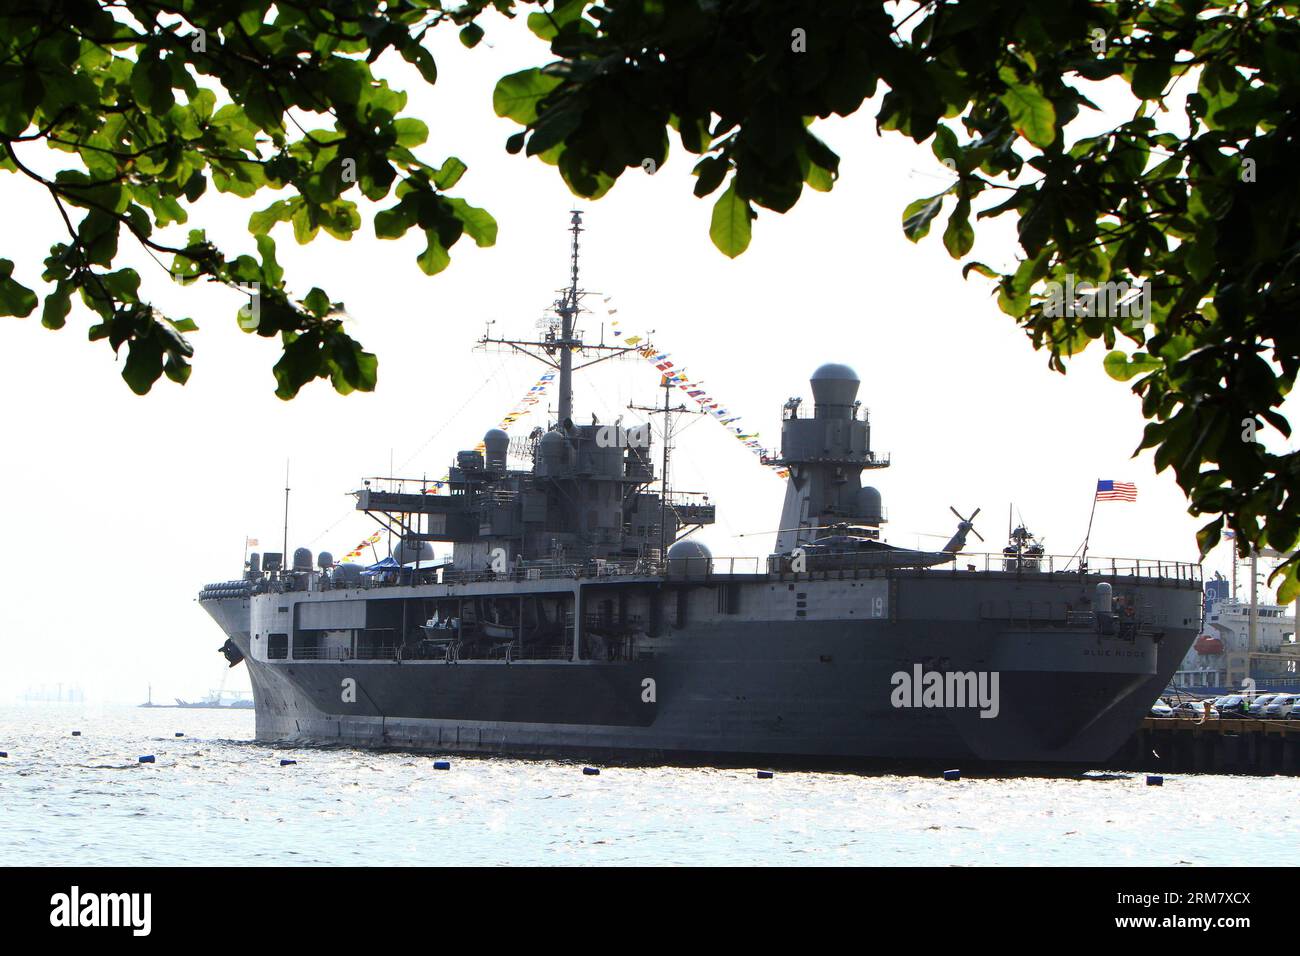 (140318) -- MANILA, 18. März 2014 (Xinhua) -- die USS Blue Ridge (LCC-19), das Flaggschiff der Siebten Flotte der Vereinigten Staaten, ist am 18. März 2014 in Manila auf den Philippinen angedockt. Die USS Blue Ridge kam am Dienstag in South Harbor in Manila an, um einen Kulanzbesuch zu machen, der bis zum 22. März dauern wird. (Xinhua/Rouelle Umali) (djj) PHILIPPINEN-MANILA-USS BLUE RIDGE PUBLICATIONxNOTxINxCHN Manila 18. März 2014 XINHUA die USS Blue Ridge LCC 19 das Flaggschiff der Vereinigten Staaten die siebte Flotte IST Seen in Manila angelegt die Philippinen 18. März 2014 die USS Blue Ridge traf Dienstag in South Harbor in M ein Stockfoto